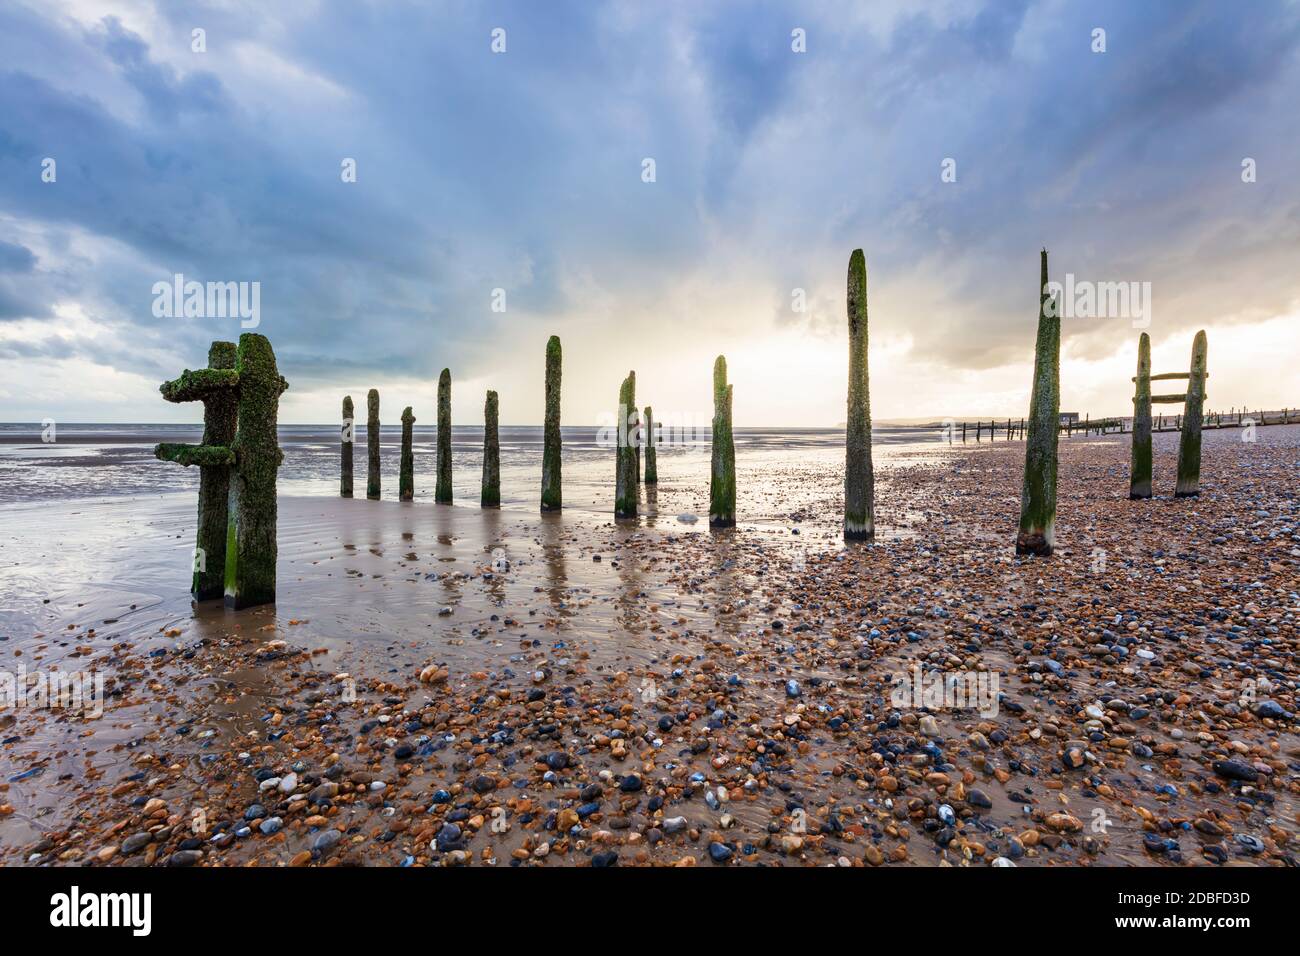 Verfaulende, aufrecht stehende Holzpfosten alter Meeresverteidigungen am Strand von Winchelsea, Winchelsea, East Sussex, England, Großbritannien, Europa Stockfoto